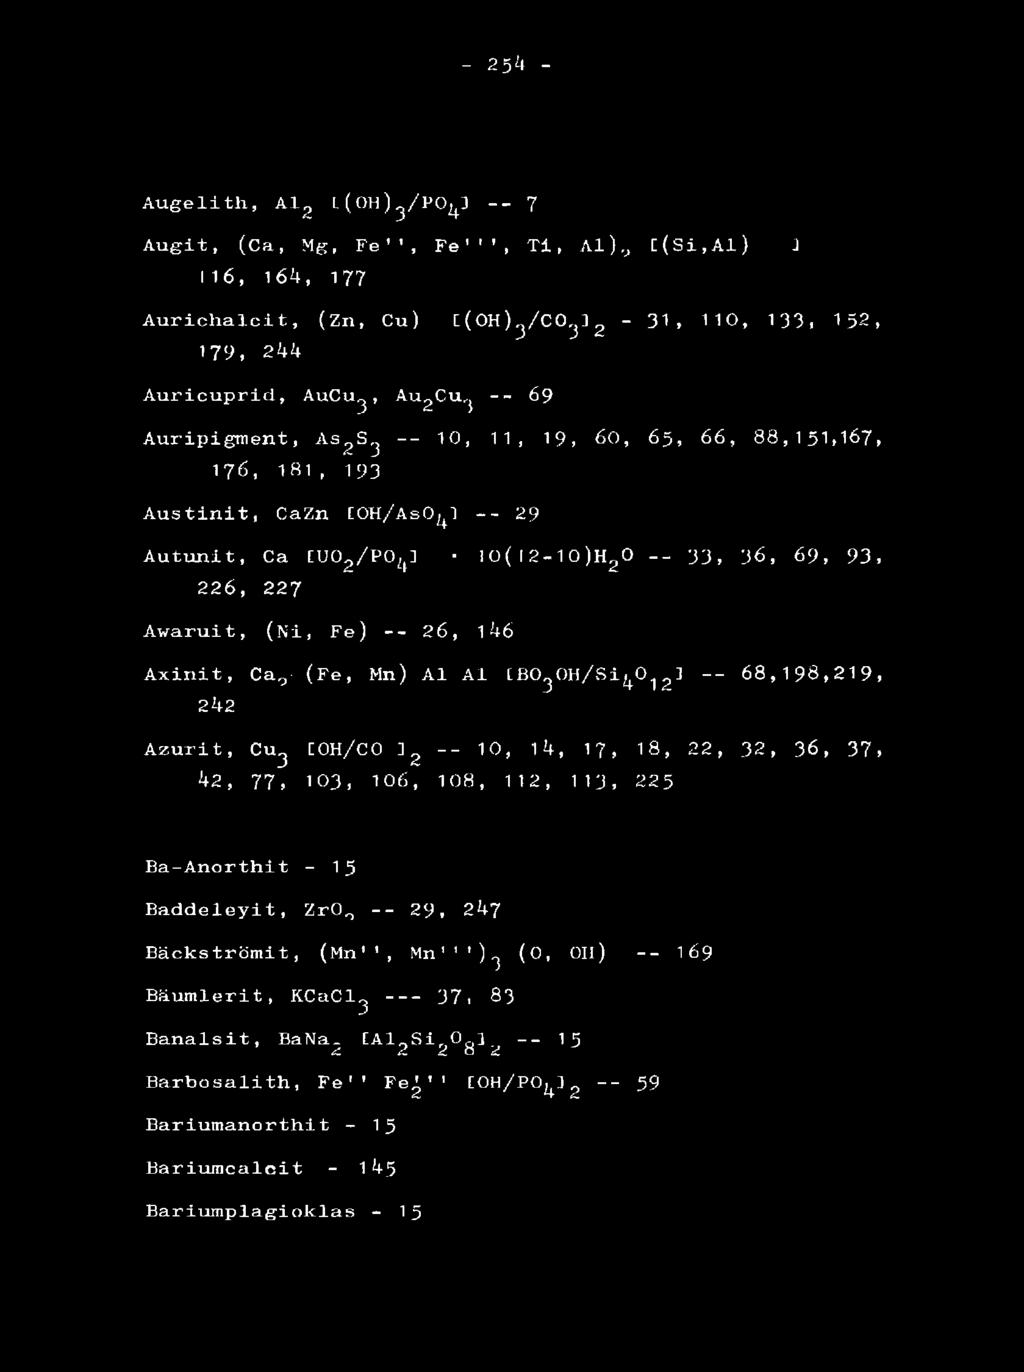 146 Axinit, Ca,y (Fe, Mn) Al Al [ B O g O H / S i ^ Z1 68,198,219, 242 Azurit, Cu3 C0H/C0 3g -- 10, 14, 17, 18, 22, 32, 36, 37.